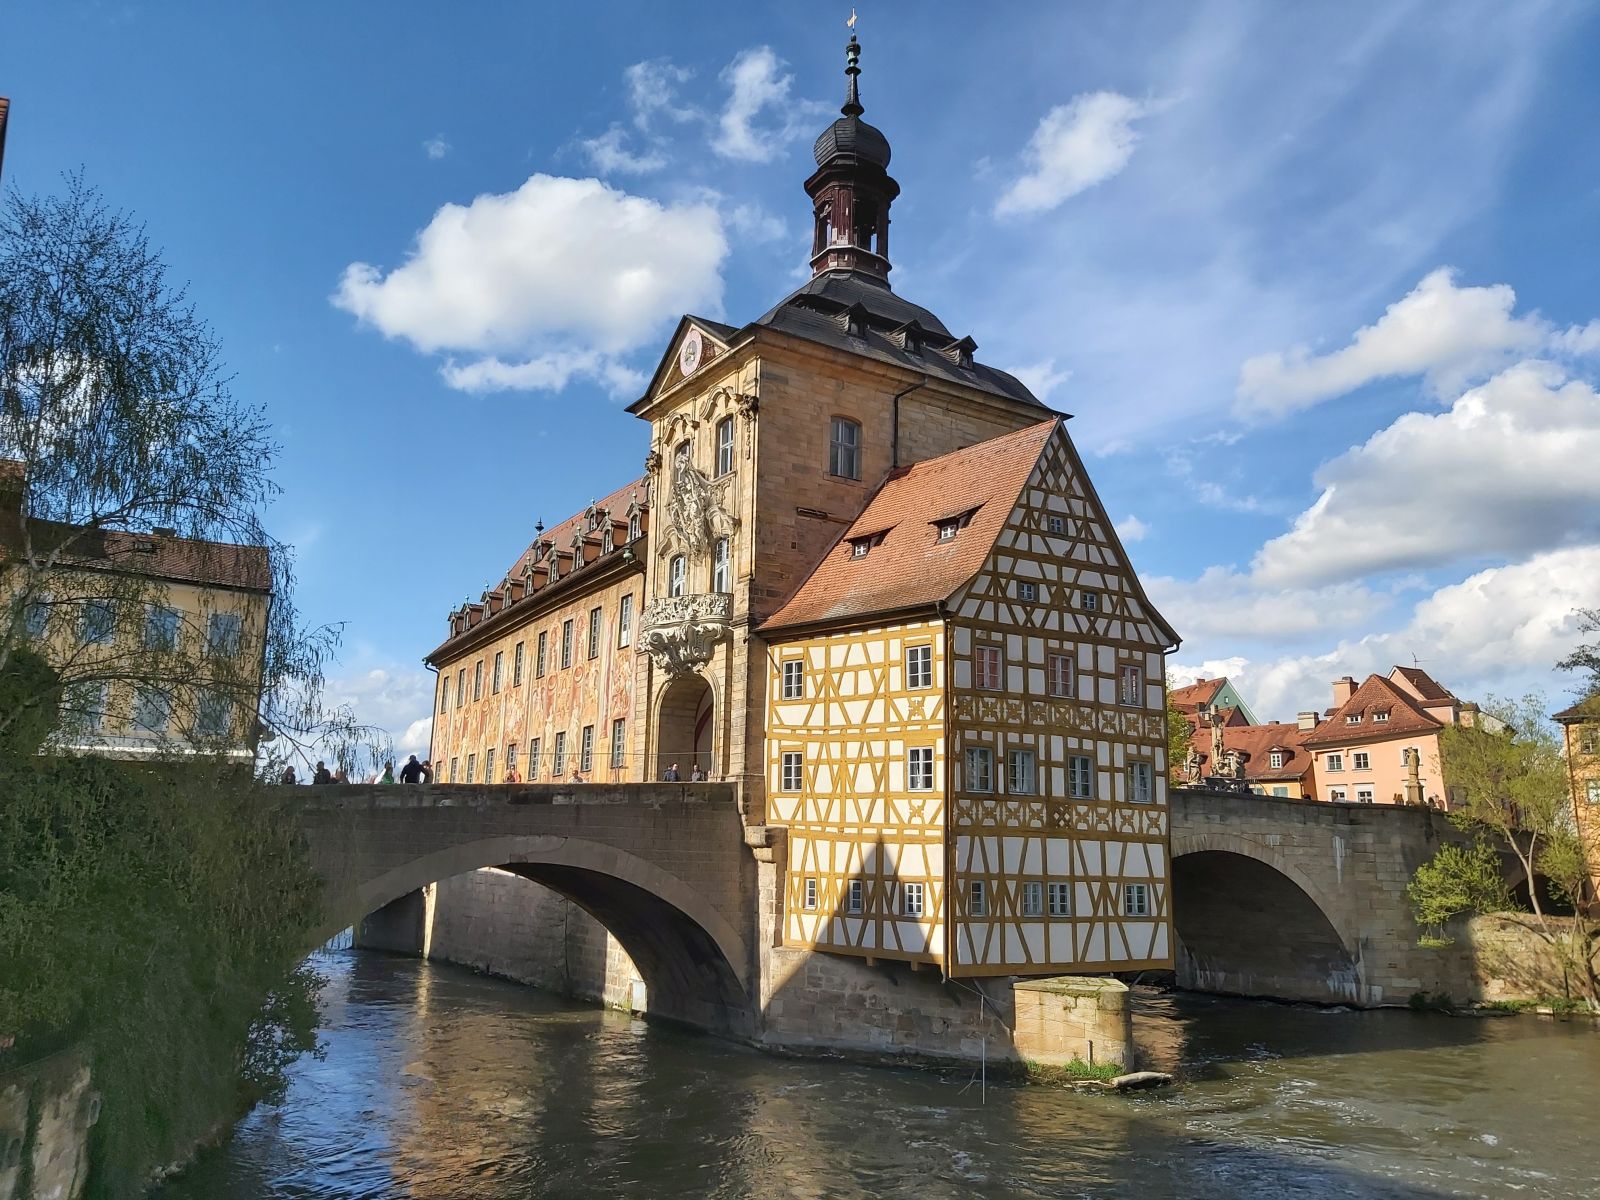 Prachtvolles Wahrzeichen: Das Alte Rathaus in Bamberg